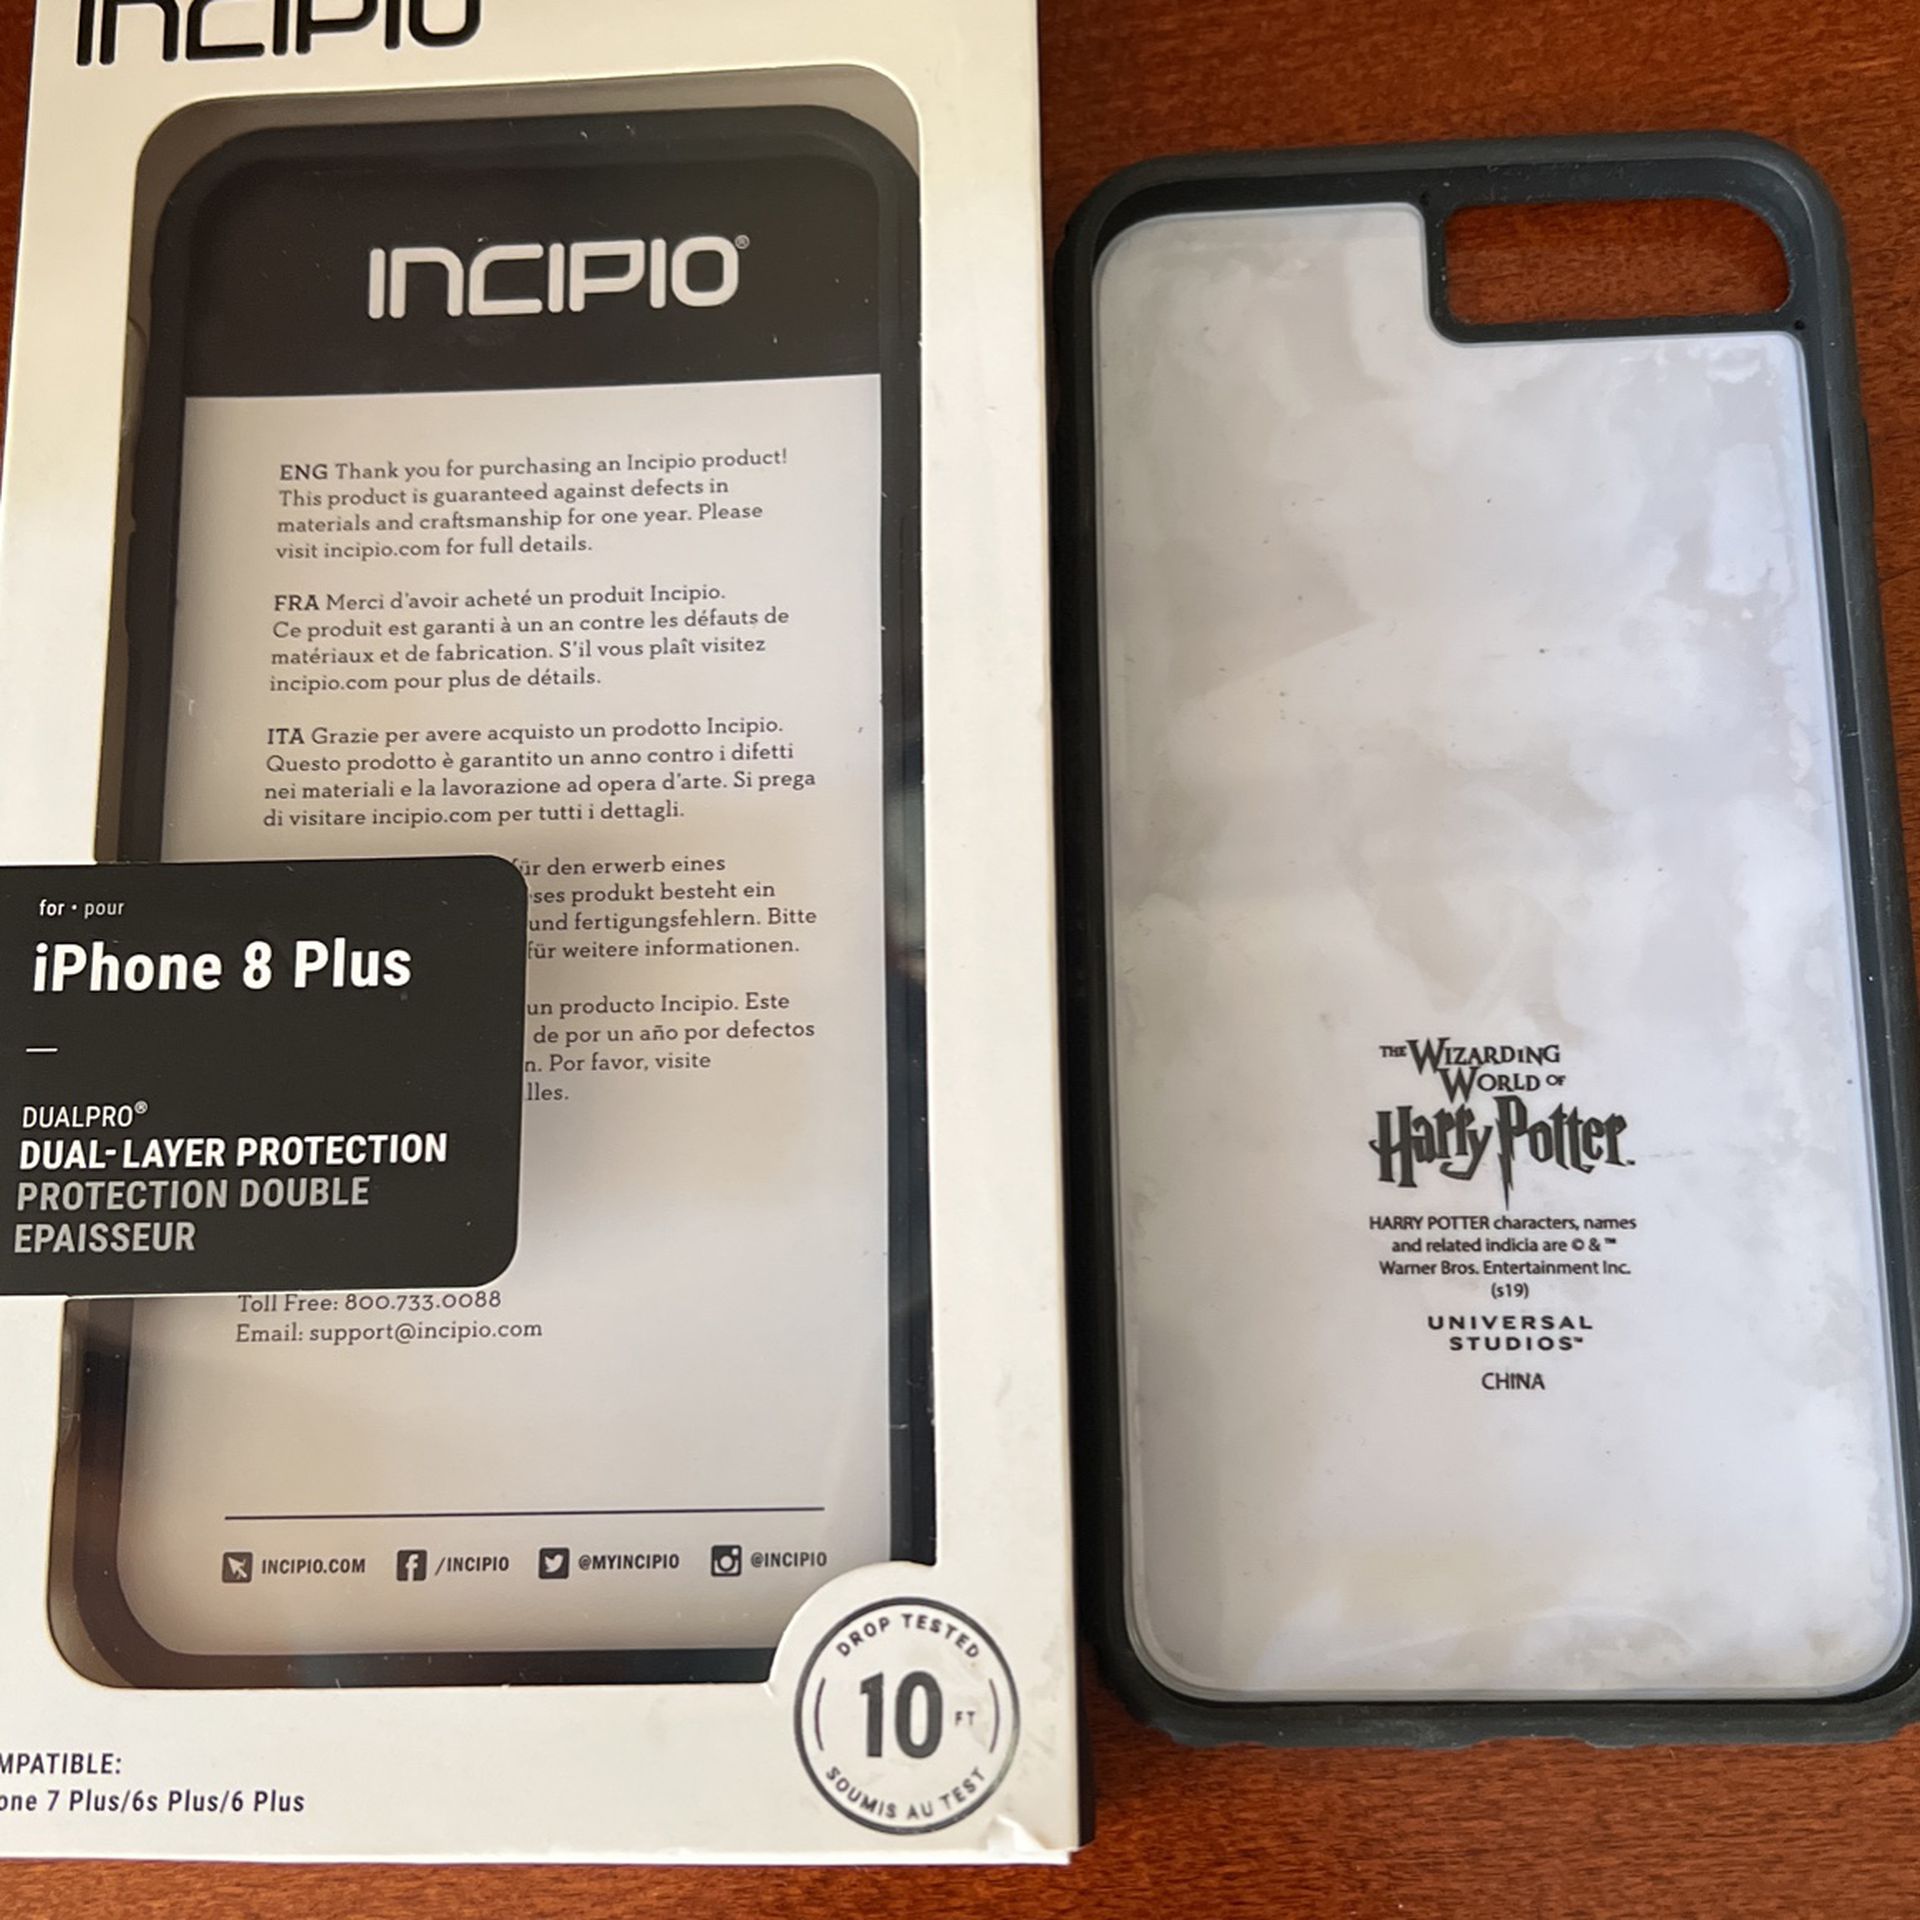 2 iPhone 8 Plus Cases